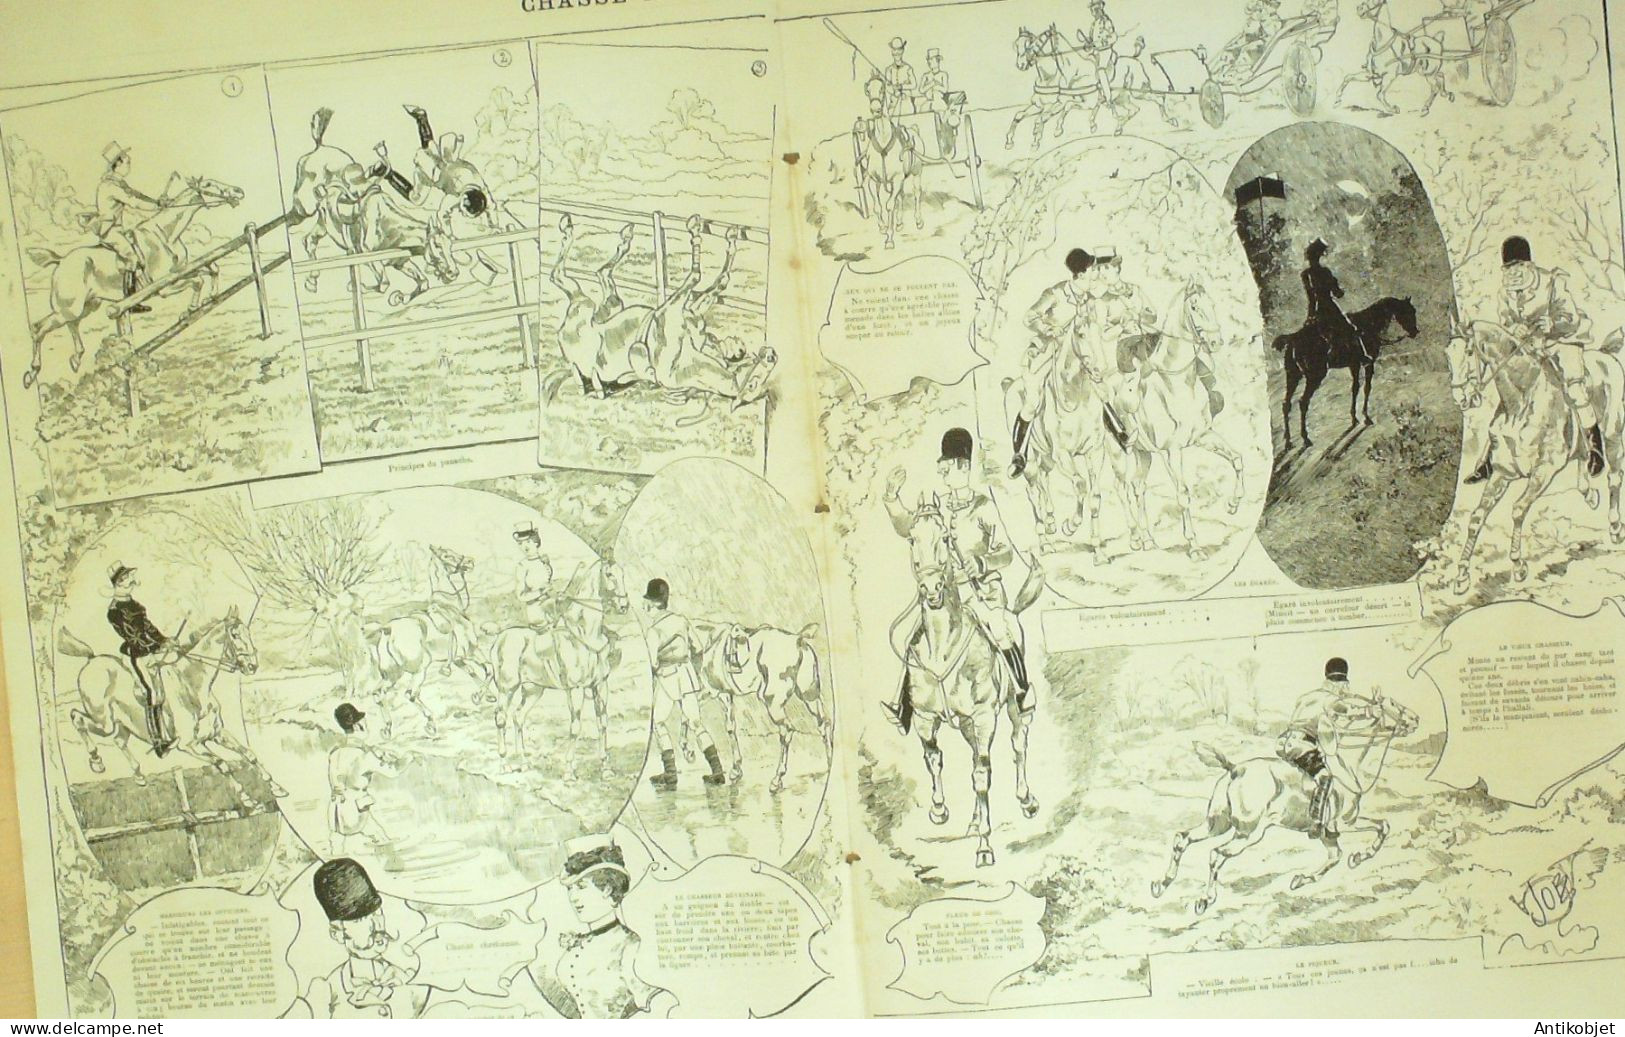 La Caricature 1883 N°199 Chasse à Courre Job Trock - Magazines - Before 1900